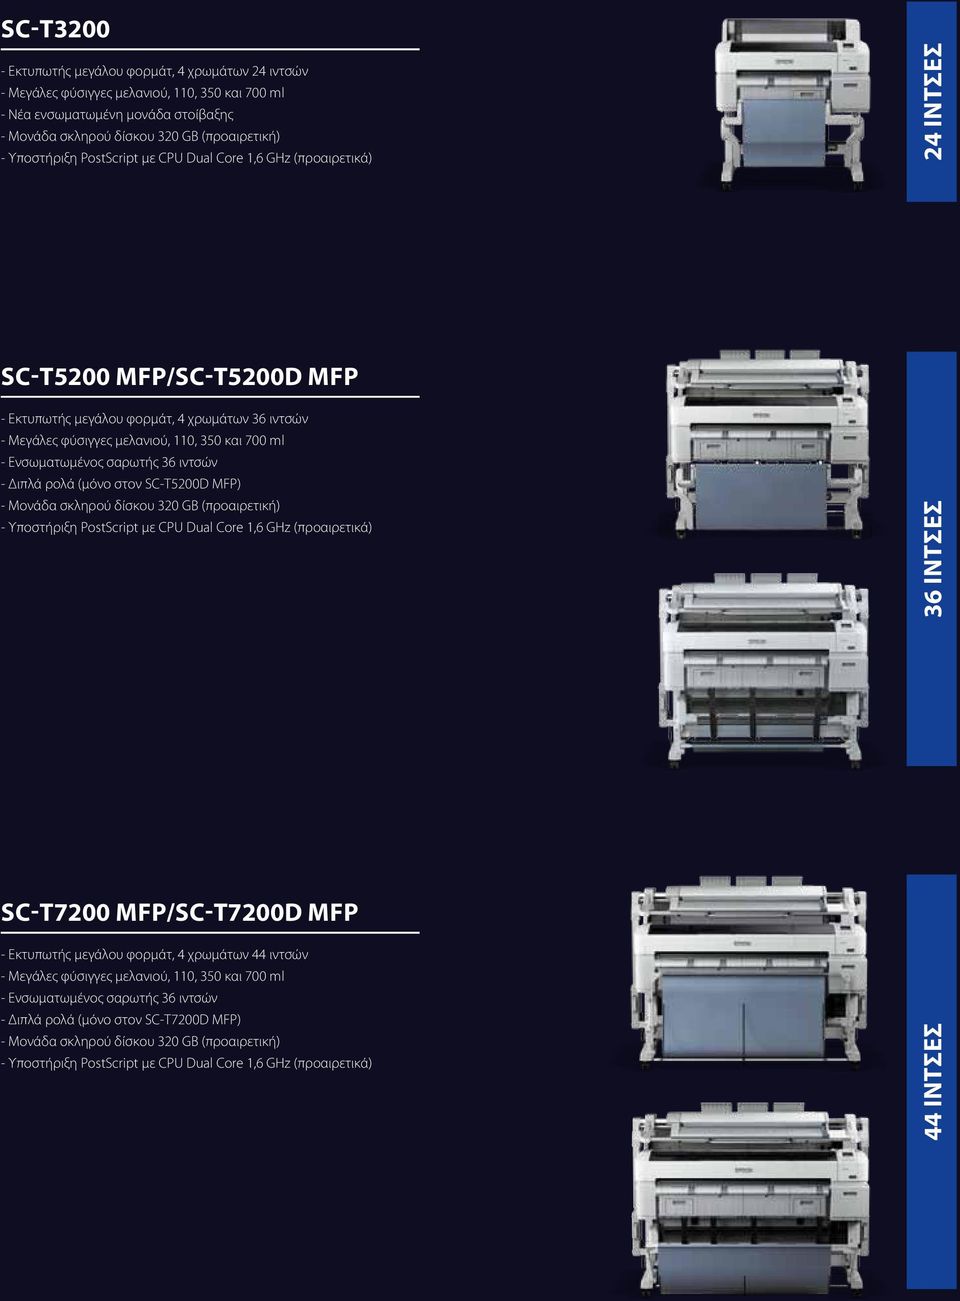 ιντσών - Διπλά ρολά (μόνο στον SC-T5200D MFP) 36 ίντσες SC-T7200 MFP/SC-T7200D MFP - Εκτυπωτής μεγάλου